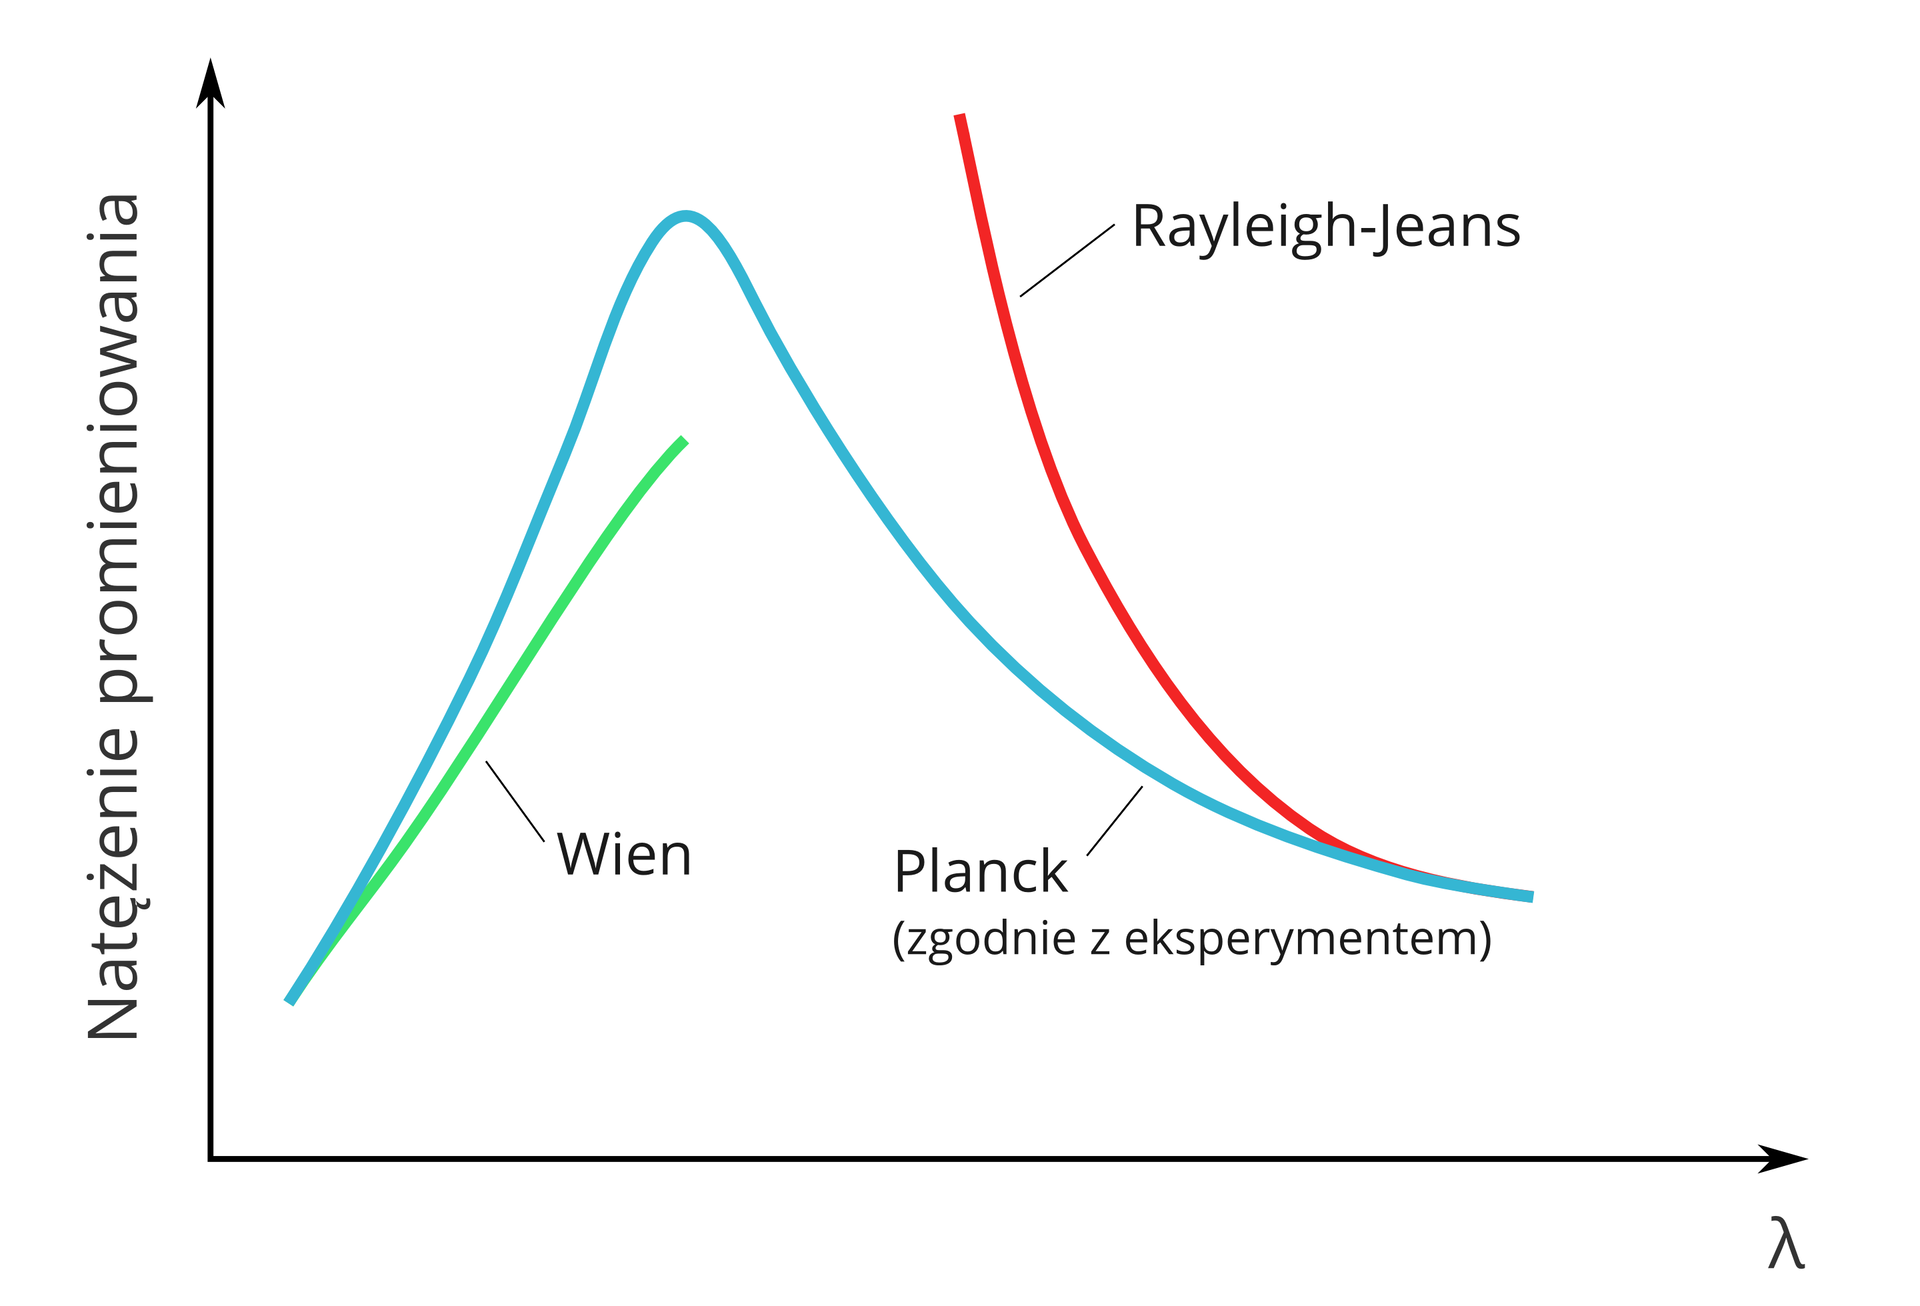 Ilustracja przedstawia zdolność emisyjną ciała doskonale czarnego. Pionowa oś wykresu to natężenie promieniowania. Pozioma oś to długość fali widmowej. Na końcu osi poziomej grecka litera lambda. Na wykresie trzy linie. Linia niebieska to natężenie promieniowania zgodnie z eksperymentem Plancka. Początek linii nie styka się z osiami wykresu. Lewa strona wykresu. Początek linii Plancka pięć milimetrów od osi pionowej i centymetr nad osią poziomą. Linia wznosi się w górę na około sześć centymetr. Nachylona w prawo. Opada stromo. Cała linia ma kształt trójkąta o zaokrąglonym górnym wierzchołku. Druga linia Wiena jest zielona. Linia Wiena ma wspólny początek z linią Plancka. Unosi się w górę i kończy w połowie linii Plancka. Dwie linie po wyjściu ze wspólnego początku, rozwidlają się. Linia Wiena oddalona jest od linii Plancka w górnej części o około pięć milimetrów. Trzecia czerwona linia znajduje się w prawej części wykresu. To linia Rayleigha-Jeansa. Początek linii pokrywa się z końcem linii Plancka. Linia czerwona wznosi się w górę, nachylona w lewo. Koniec linii dwa milimetry ponad wierzchołkiem linii Plancka.